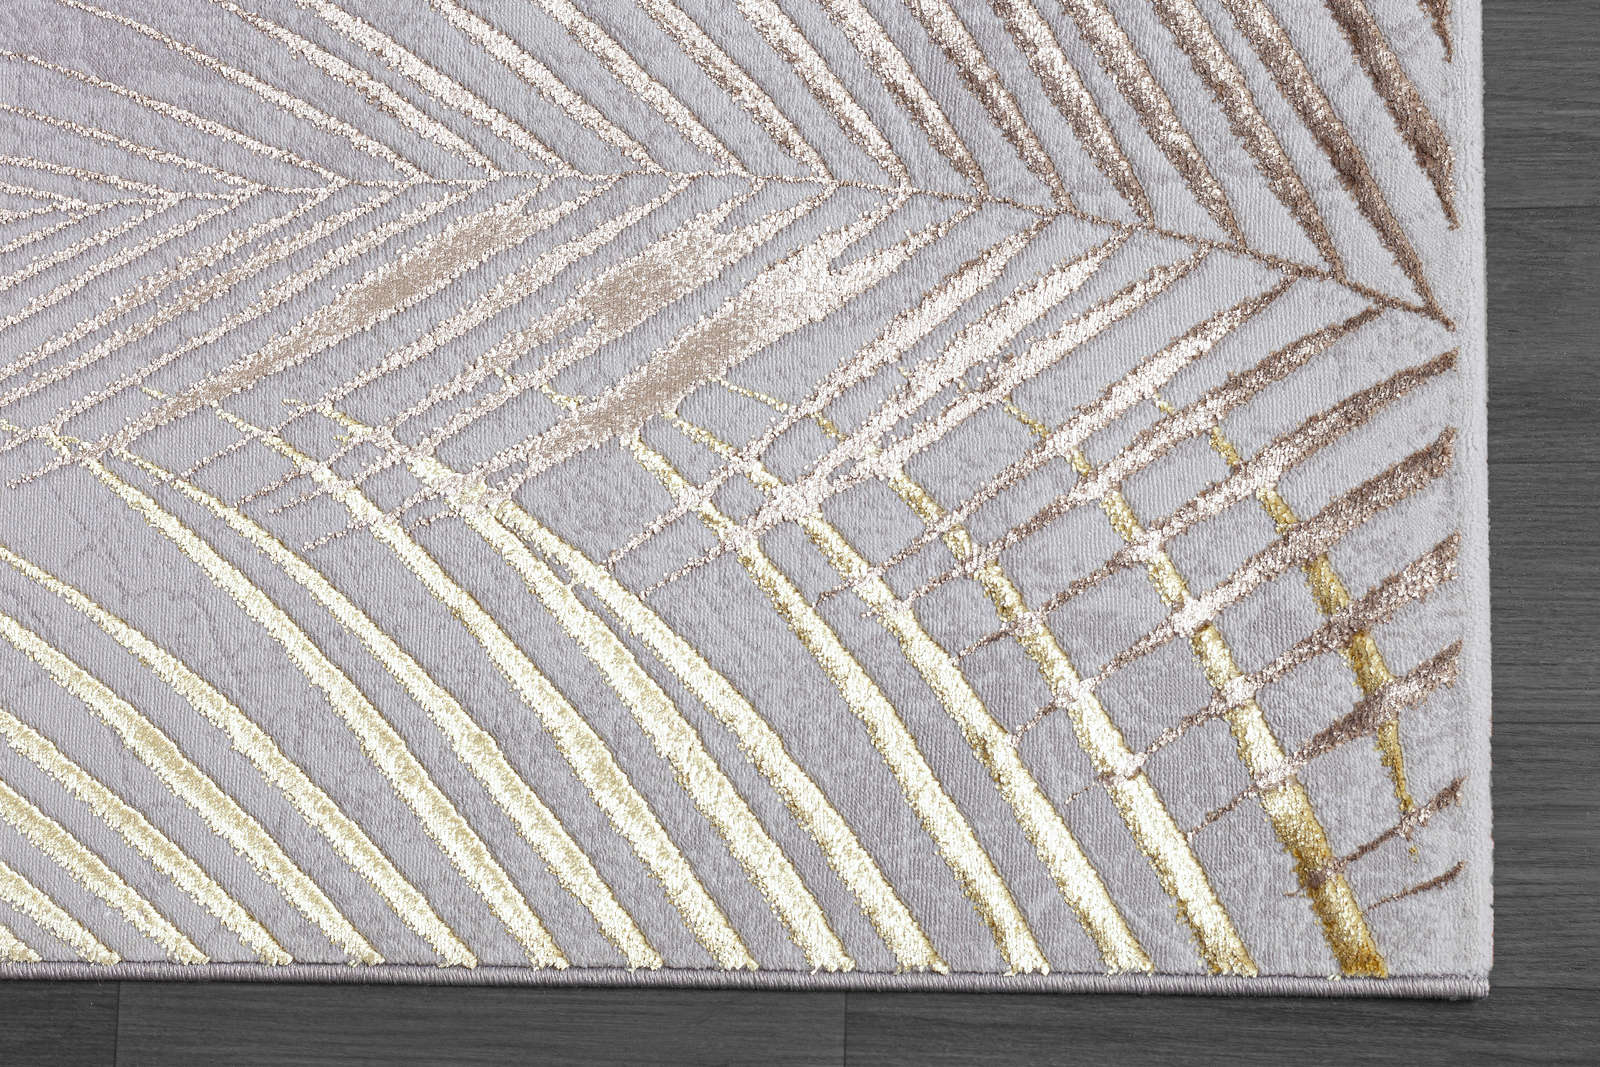             Knuffelzacht hoogpolig tapijt in grijs als loper - 290 x 200 cm
        